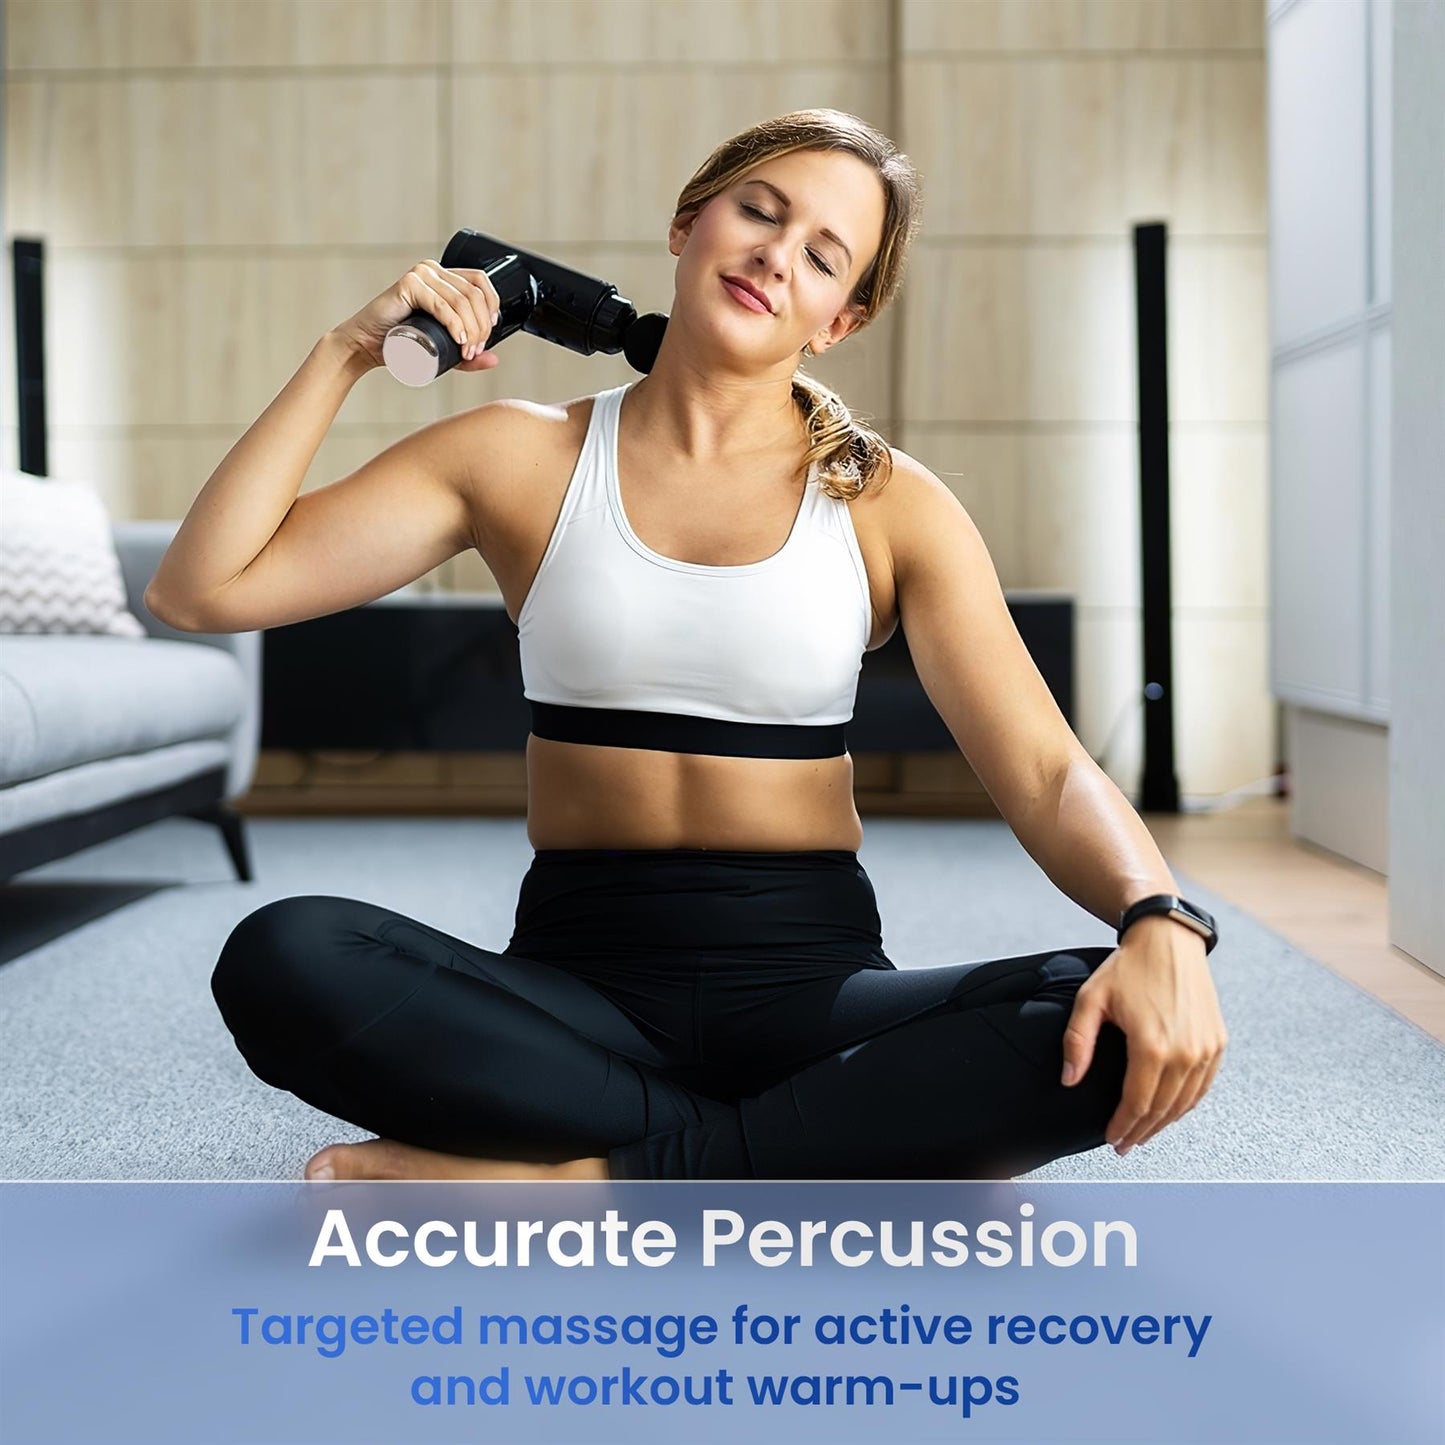 Portable Deep Tissue Massage Gun with Adjustable Speeds